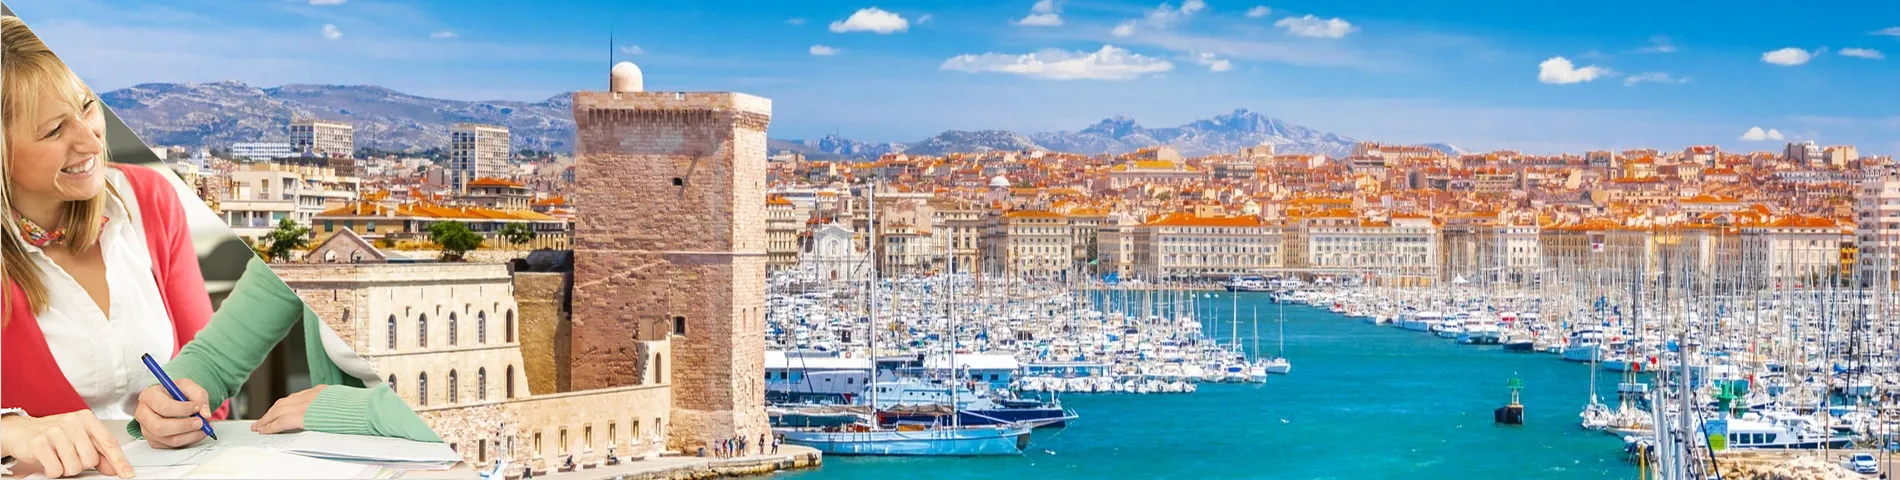 Marseille - Študujte a bývajte v dome učiteľa